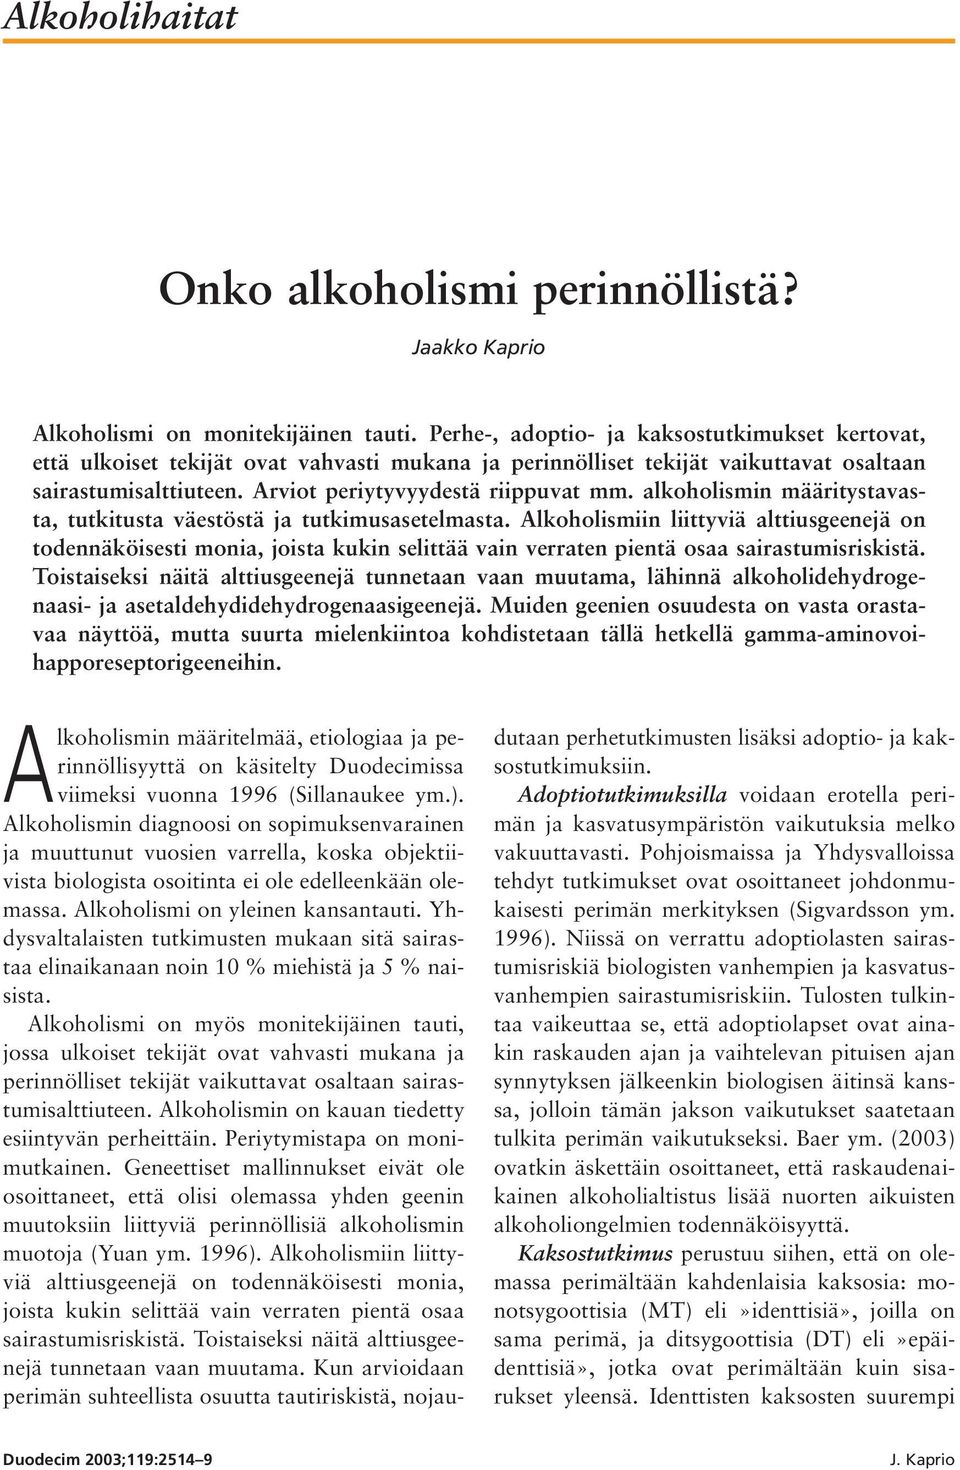 alkoholismin määritystavasta, tutkitusta väestöstä ja tutkimusasetelmasta.